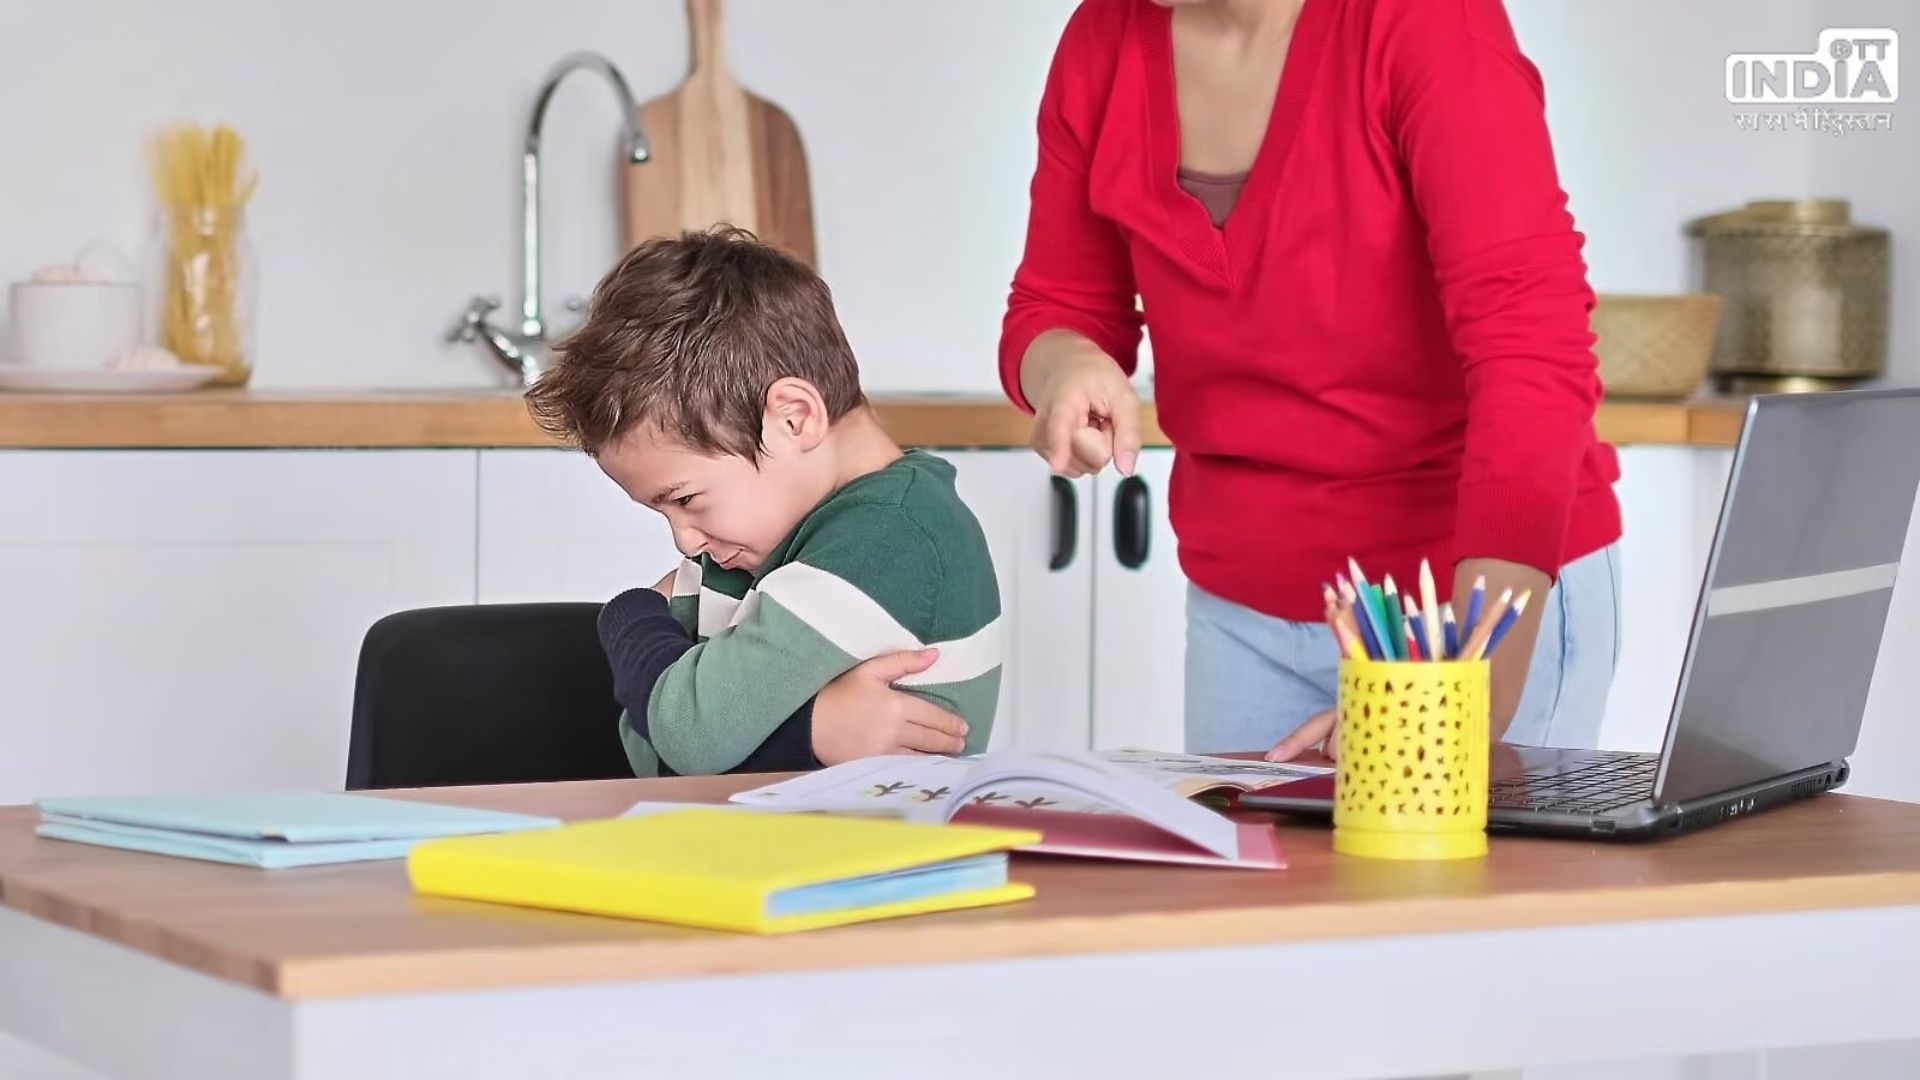 Parenting Tips: जिद्दी बच्चे को सुधारने के लिए बदले अपने तरीके, अपनाएं ये टिप्स